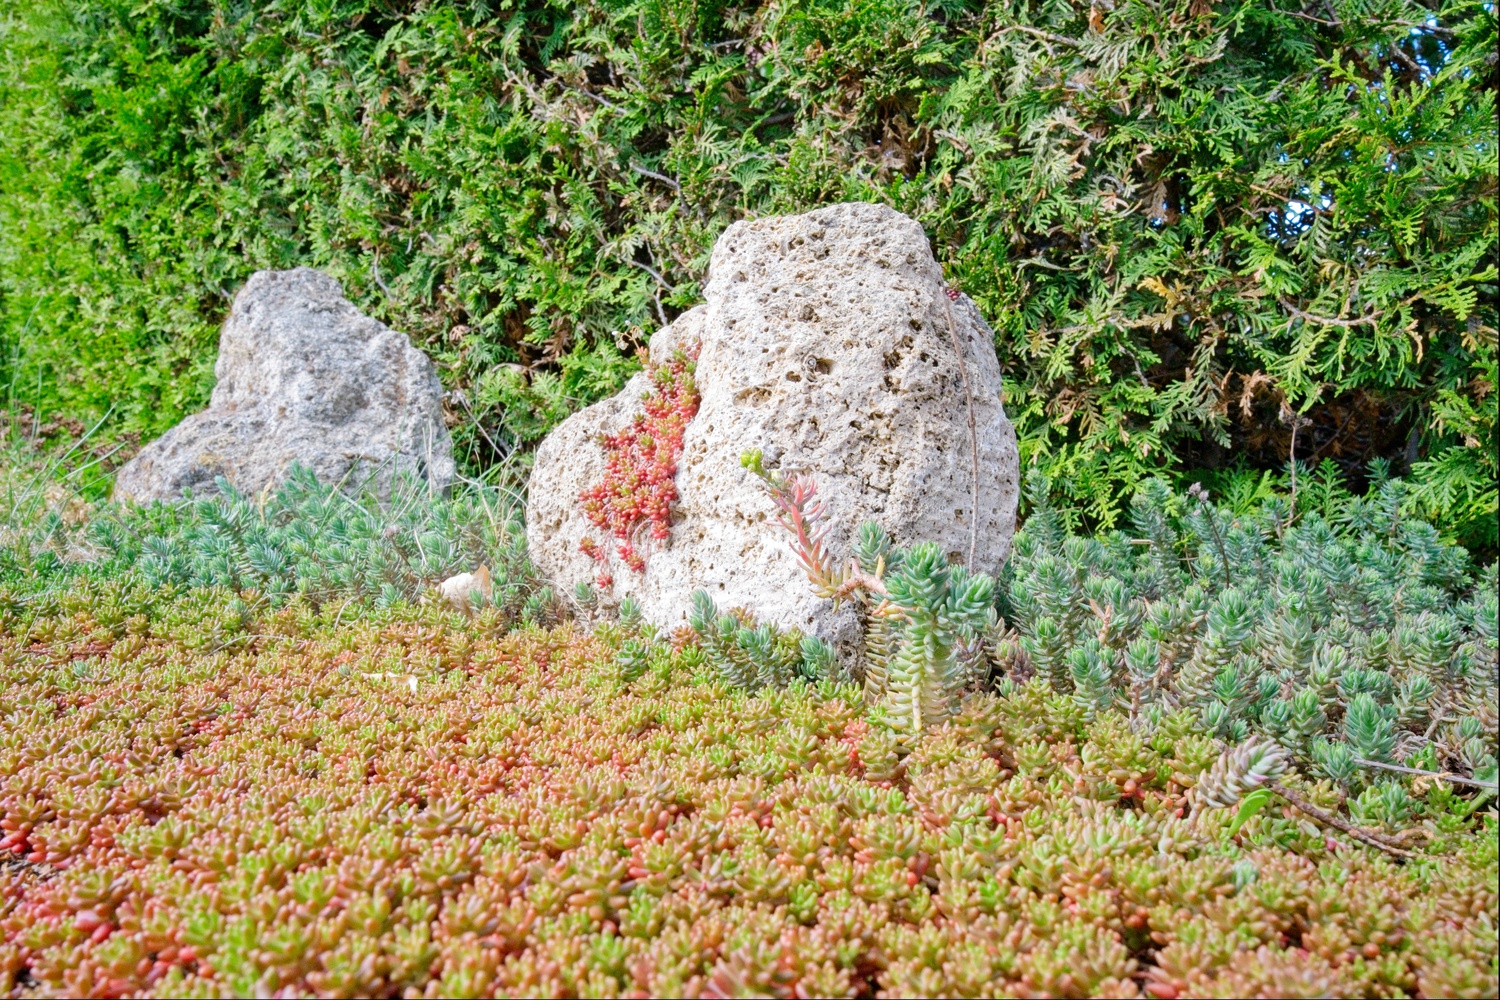 Mit den Steinen wirkt die Szene wie eine kleine Landschaft.